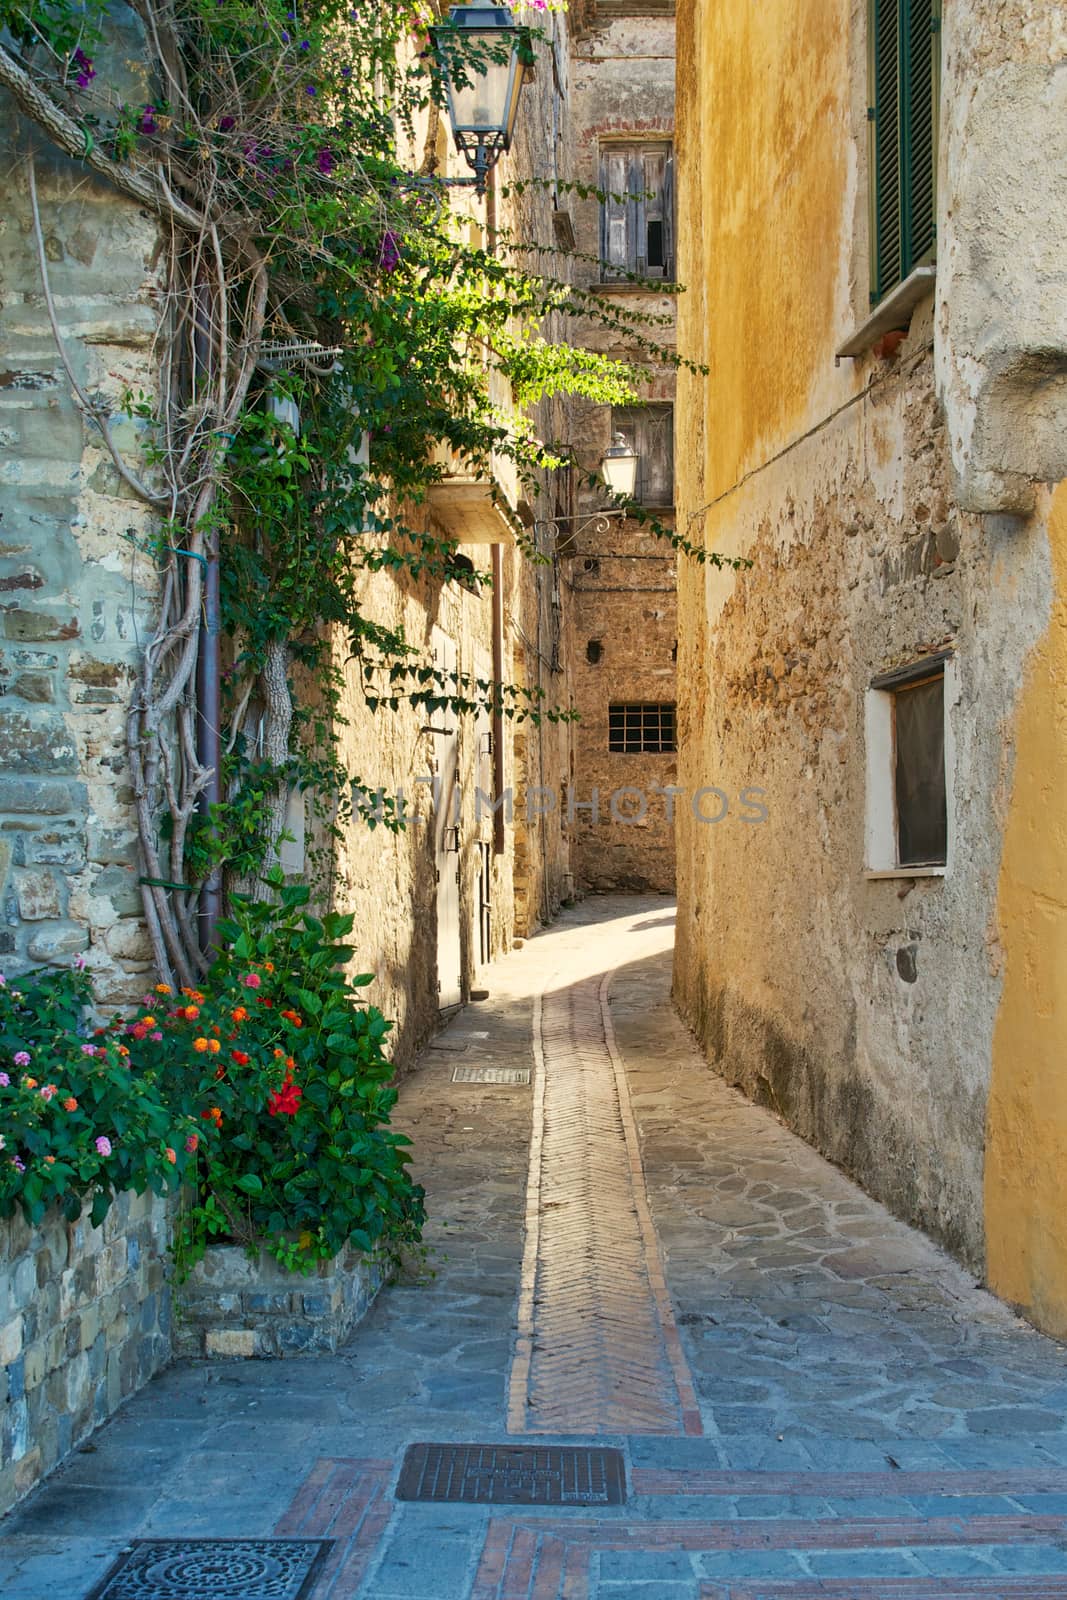 A tipical alley in Acciaroli, Cilento, Southern Italy